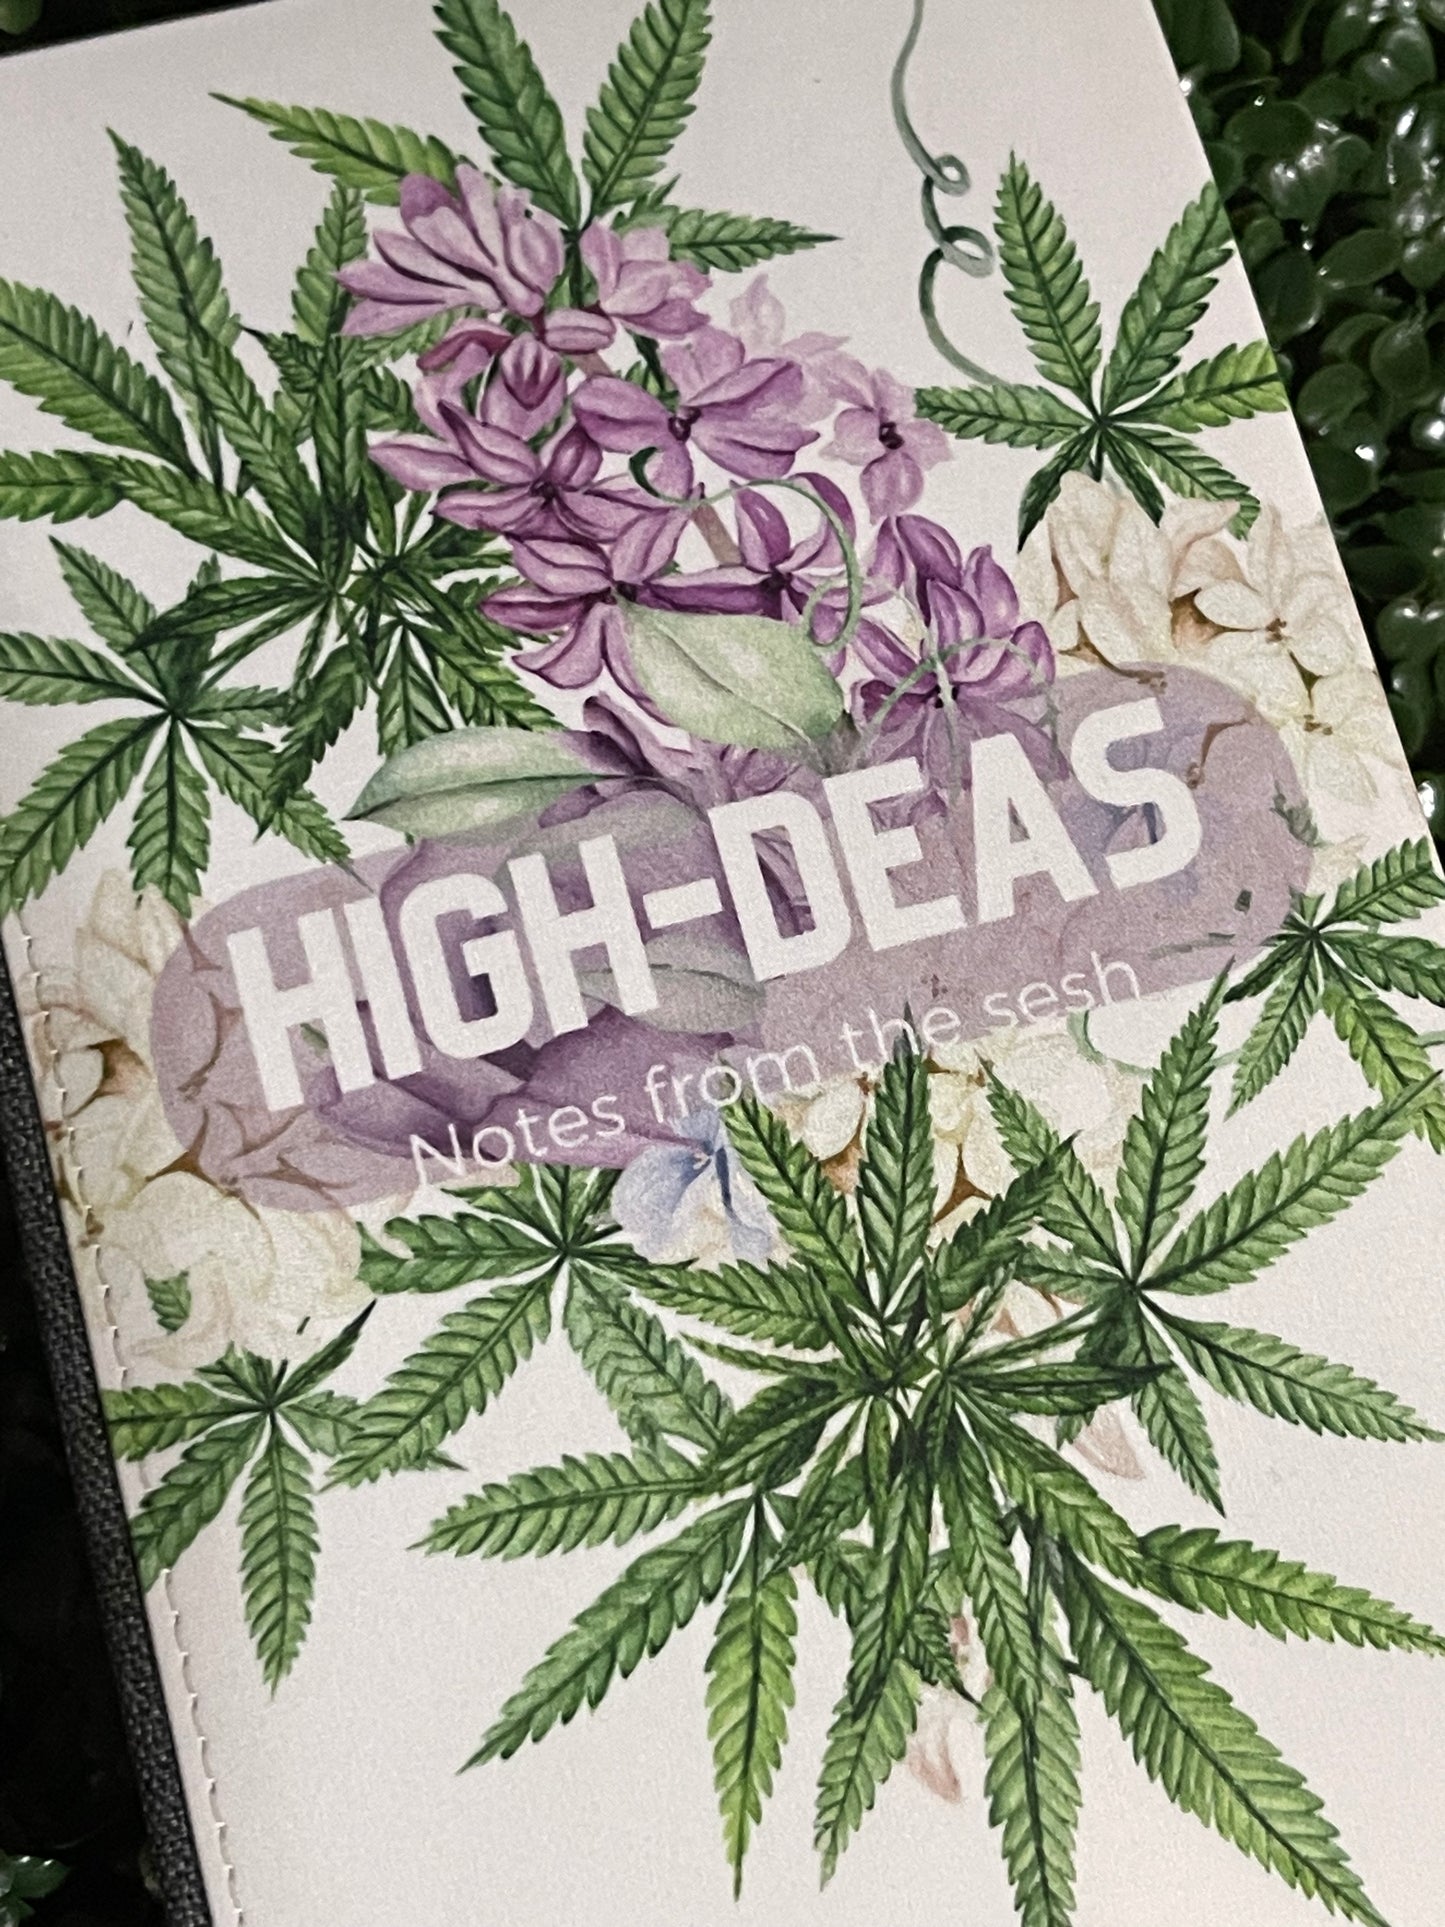 High-deas Journal floral2